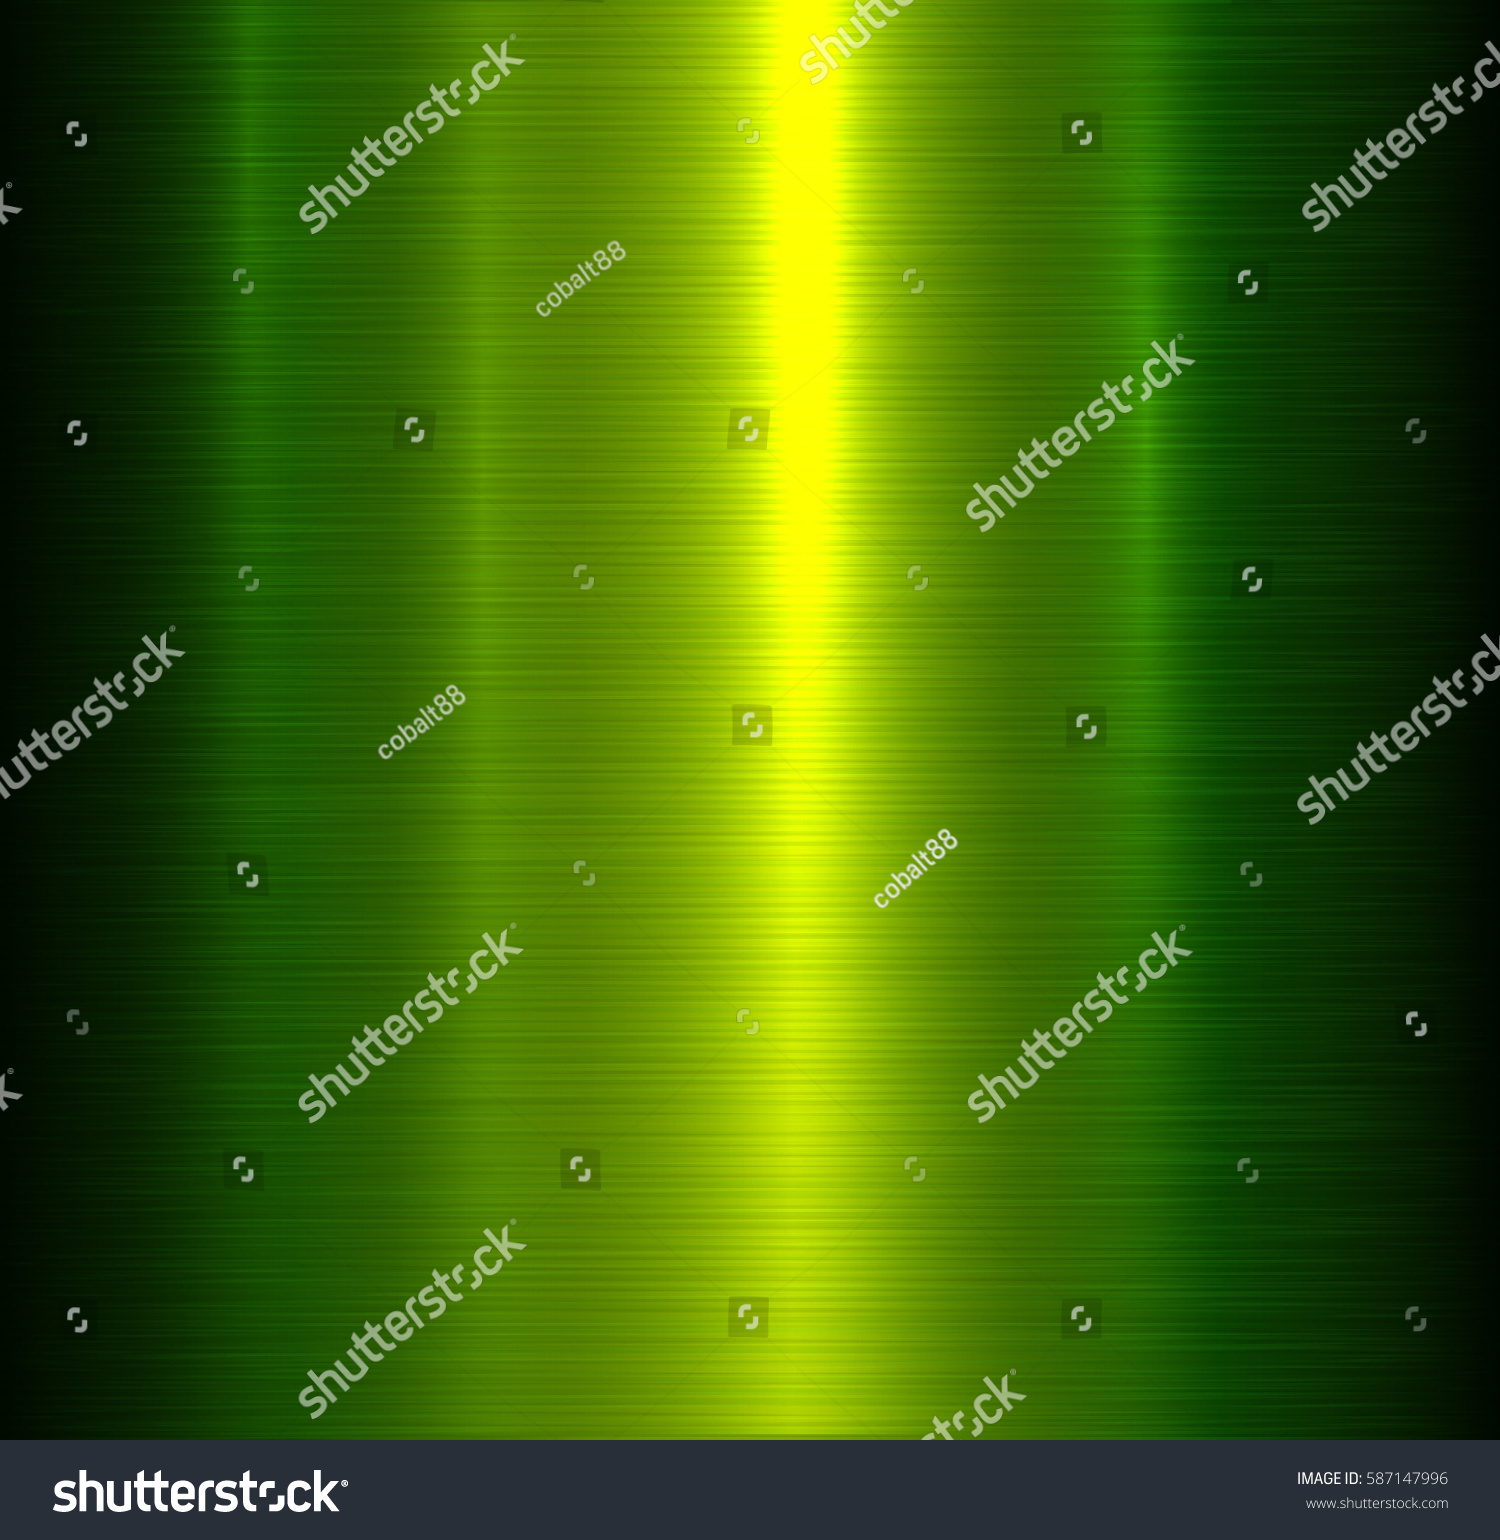 Metal Background Green Brushed Metallic Texture Stock Vector 587147996 ...